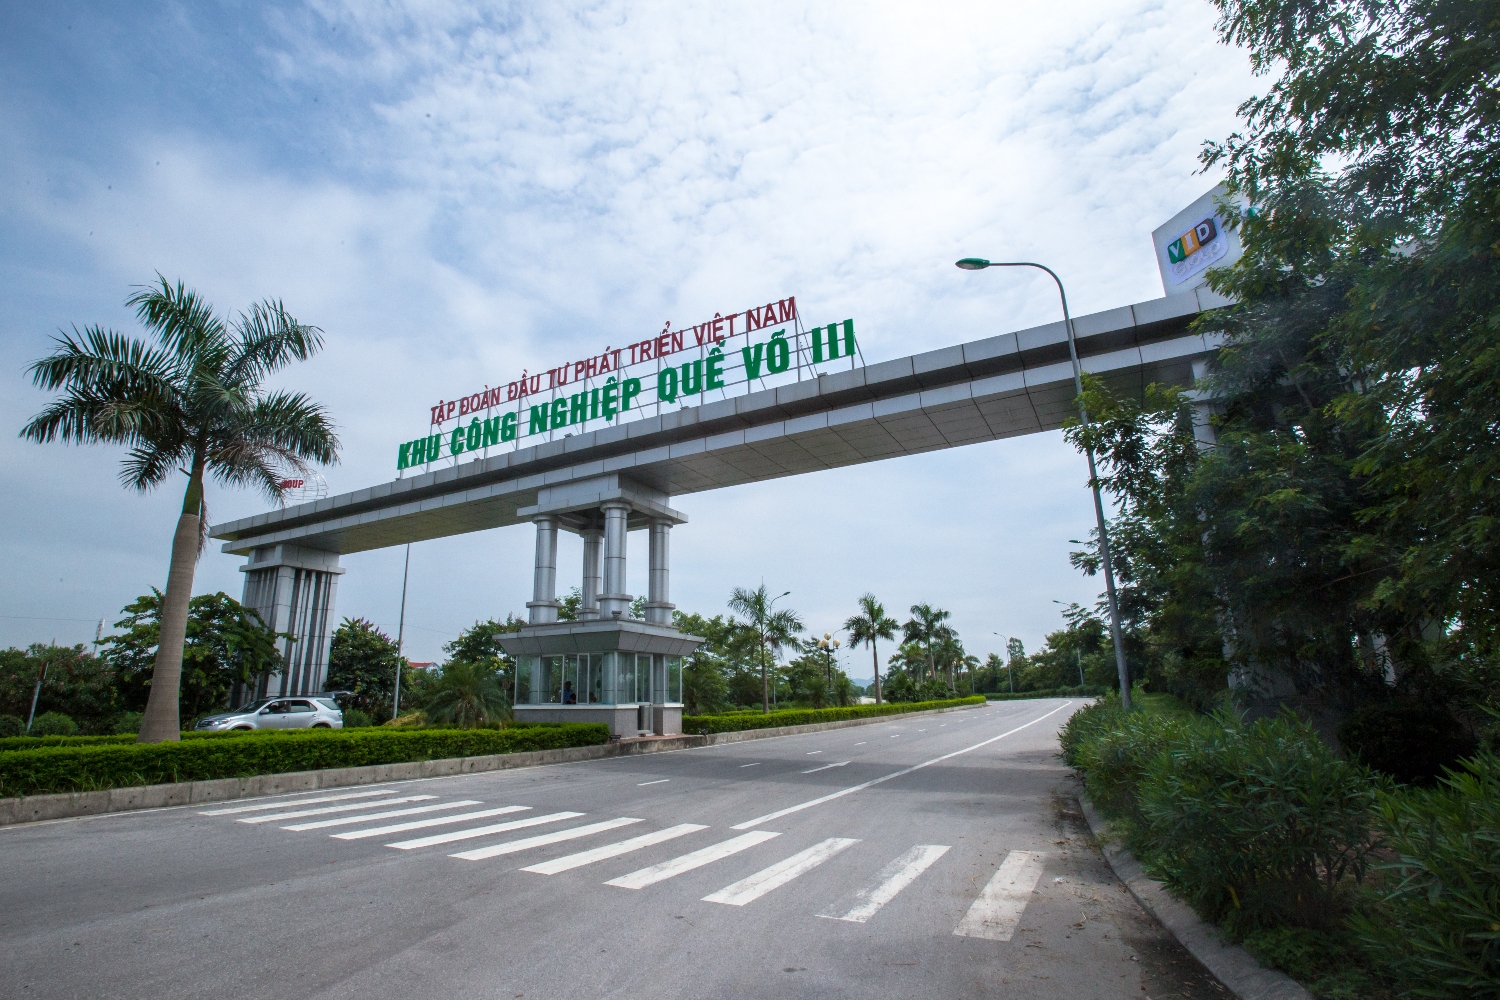 (Khu công nghiệp Quế Võ 3 – Bắc Ninh)